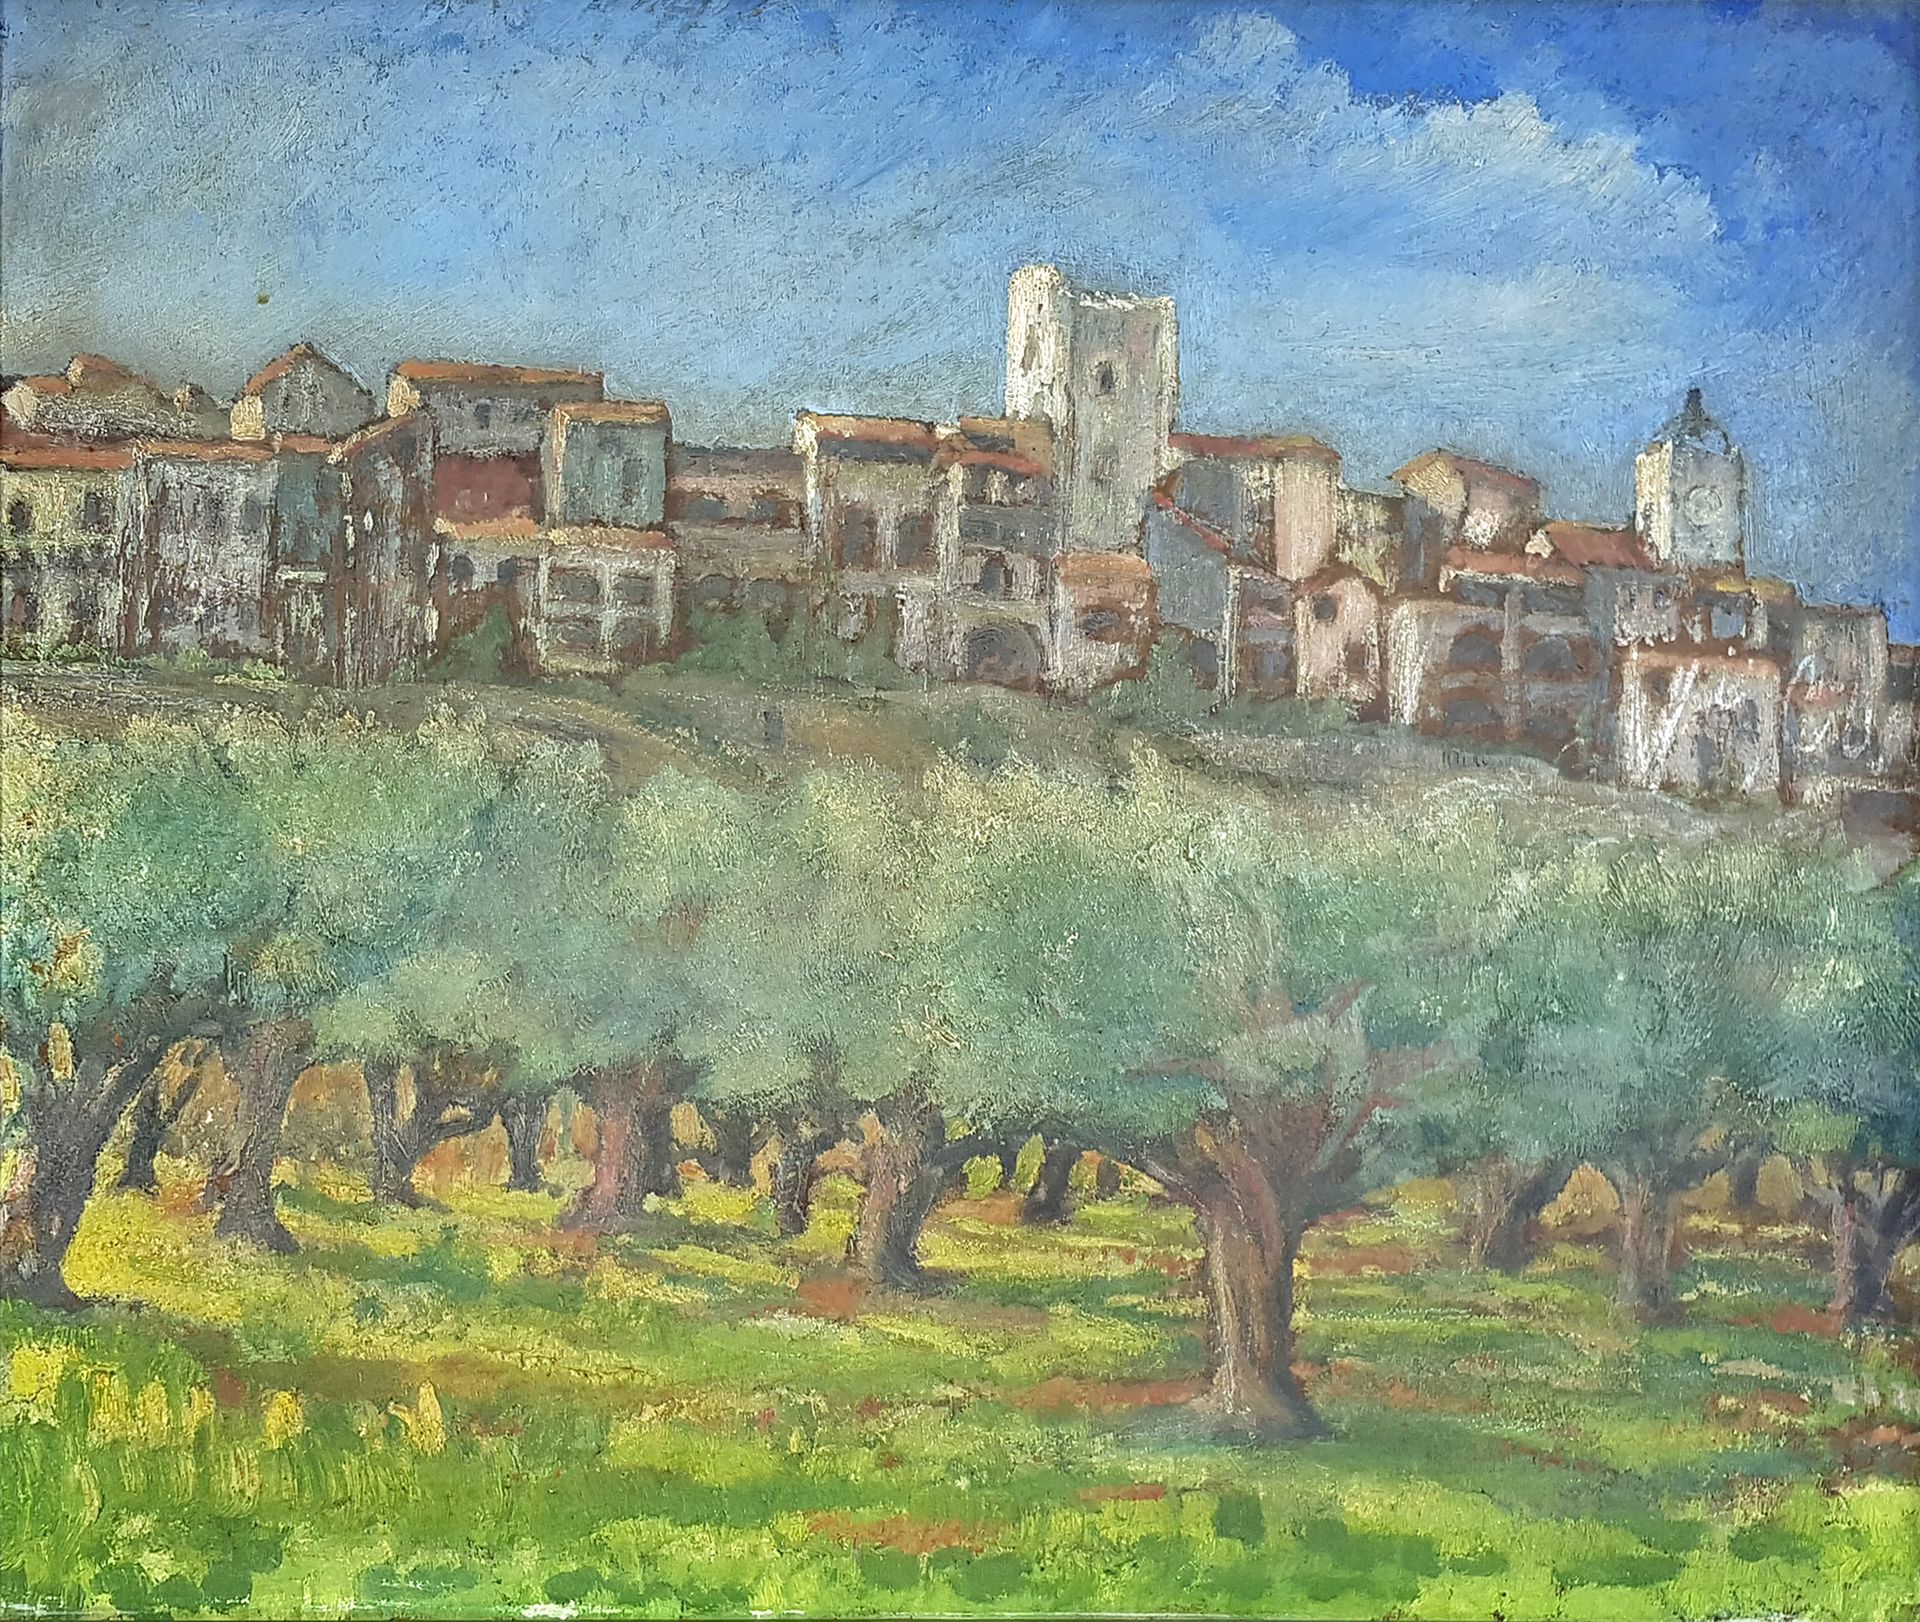 Null Scuola del Sud del 20° secolo

L'oliveto

Olio su pannello

46 x 55,5 cm a &hellip;